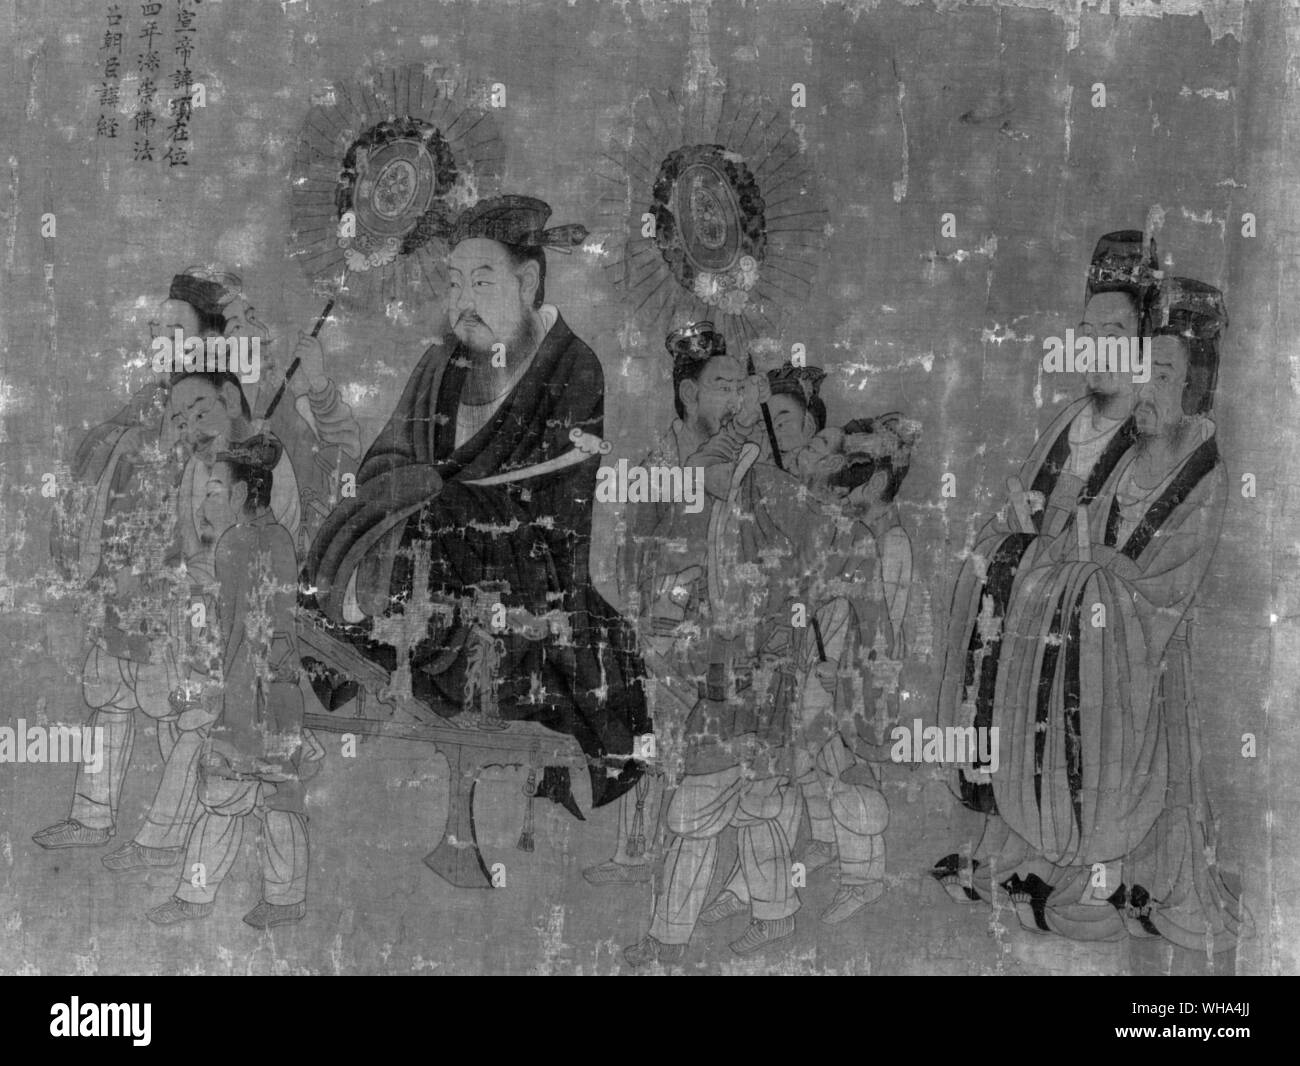 Yen Li Pen. Kaiser Husan (das Hsuan?) Ti von Ch'en Dynastie.. Yen Li-pen, d. 673, Chinesische Maler, vor allem Master von der T'ang-Dynastie. Er wurde einer der bekanntesten Maler des 7 Cent. und hielt mehrere hohe öffentliche Ämter. Obwohl wahrscheinlich keines seiner Werke heute überlebt, Aufzeichnungen sagen uns, dass Er am meisten für seine Gemälde von buddhistischen und taoistischen Themen bekannt und auch als Maler von historischen Persönlichkeiten und Ereignissen. Die hervorragende Blättern Malerei Portraits von 13 Kaisern im Museum der schönen Künste, Boston, hat ihm zugeschrieben, aber eventuell eine Kopie. Es stellt Stockfoto